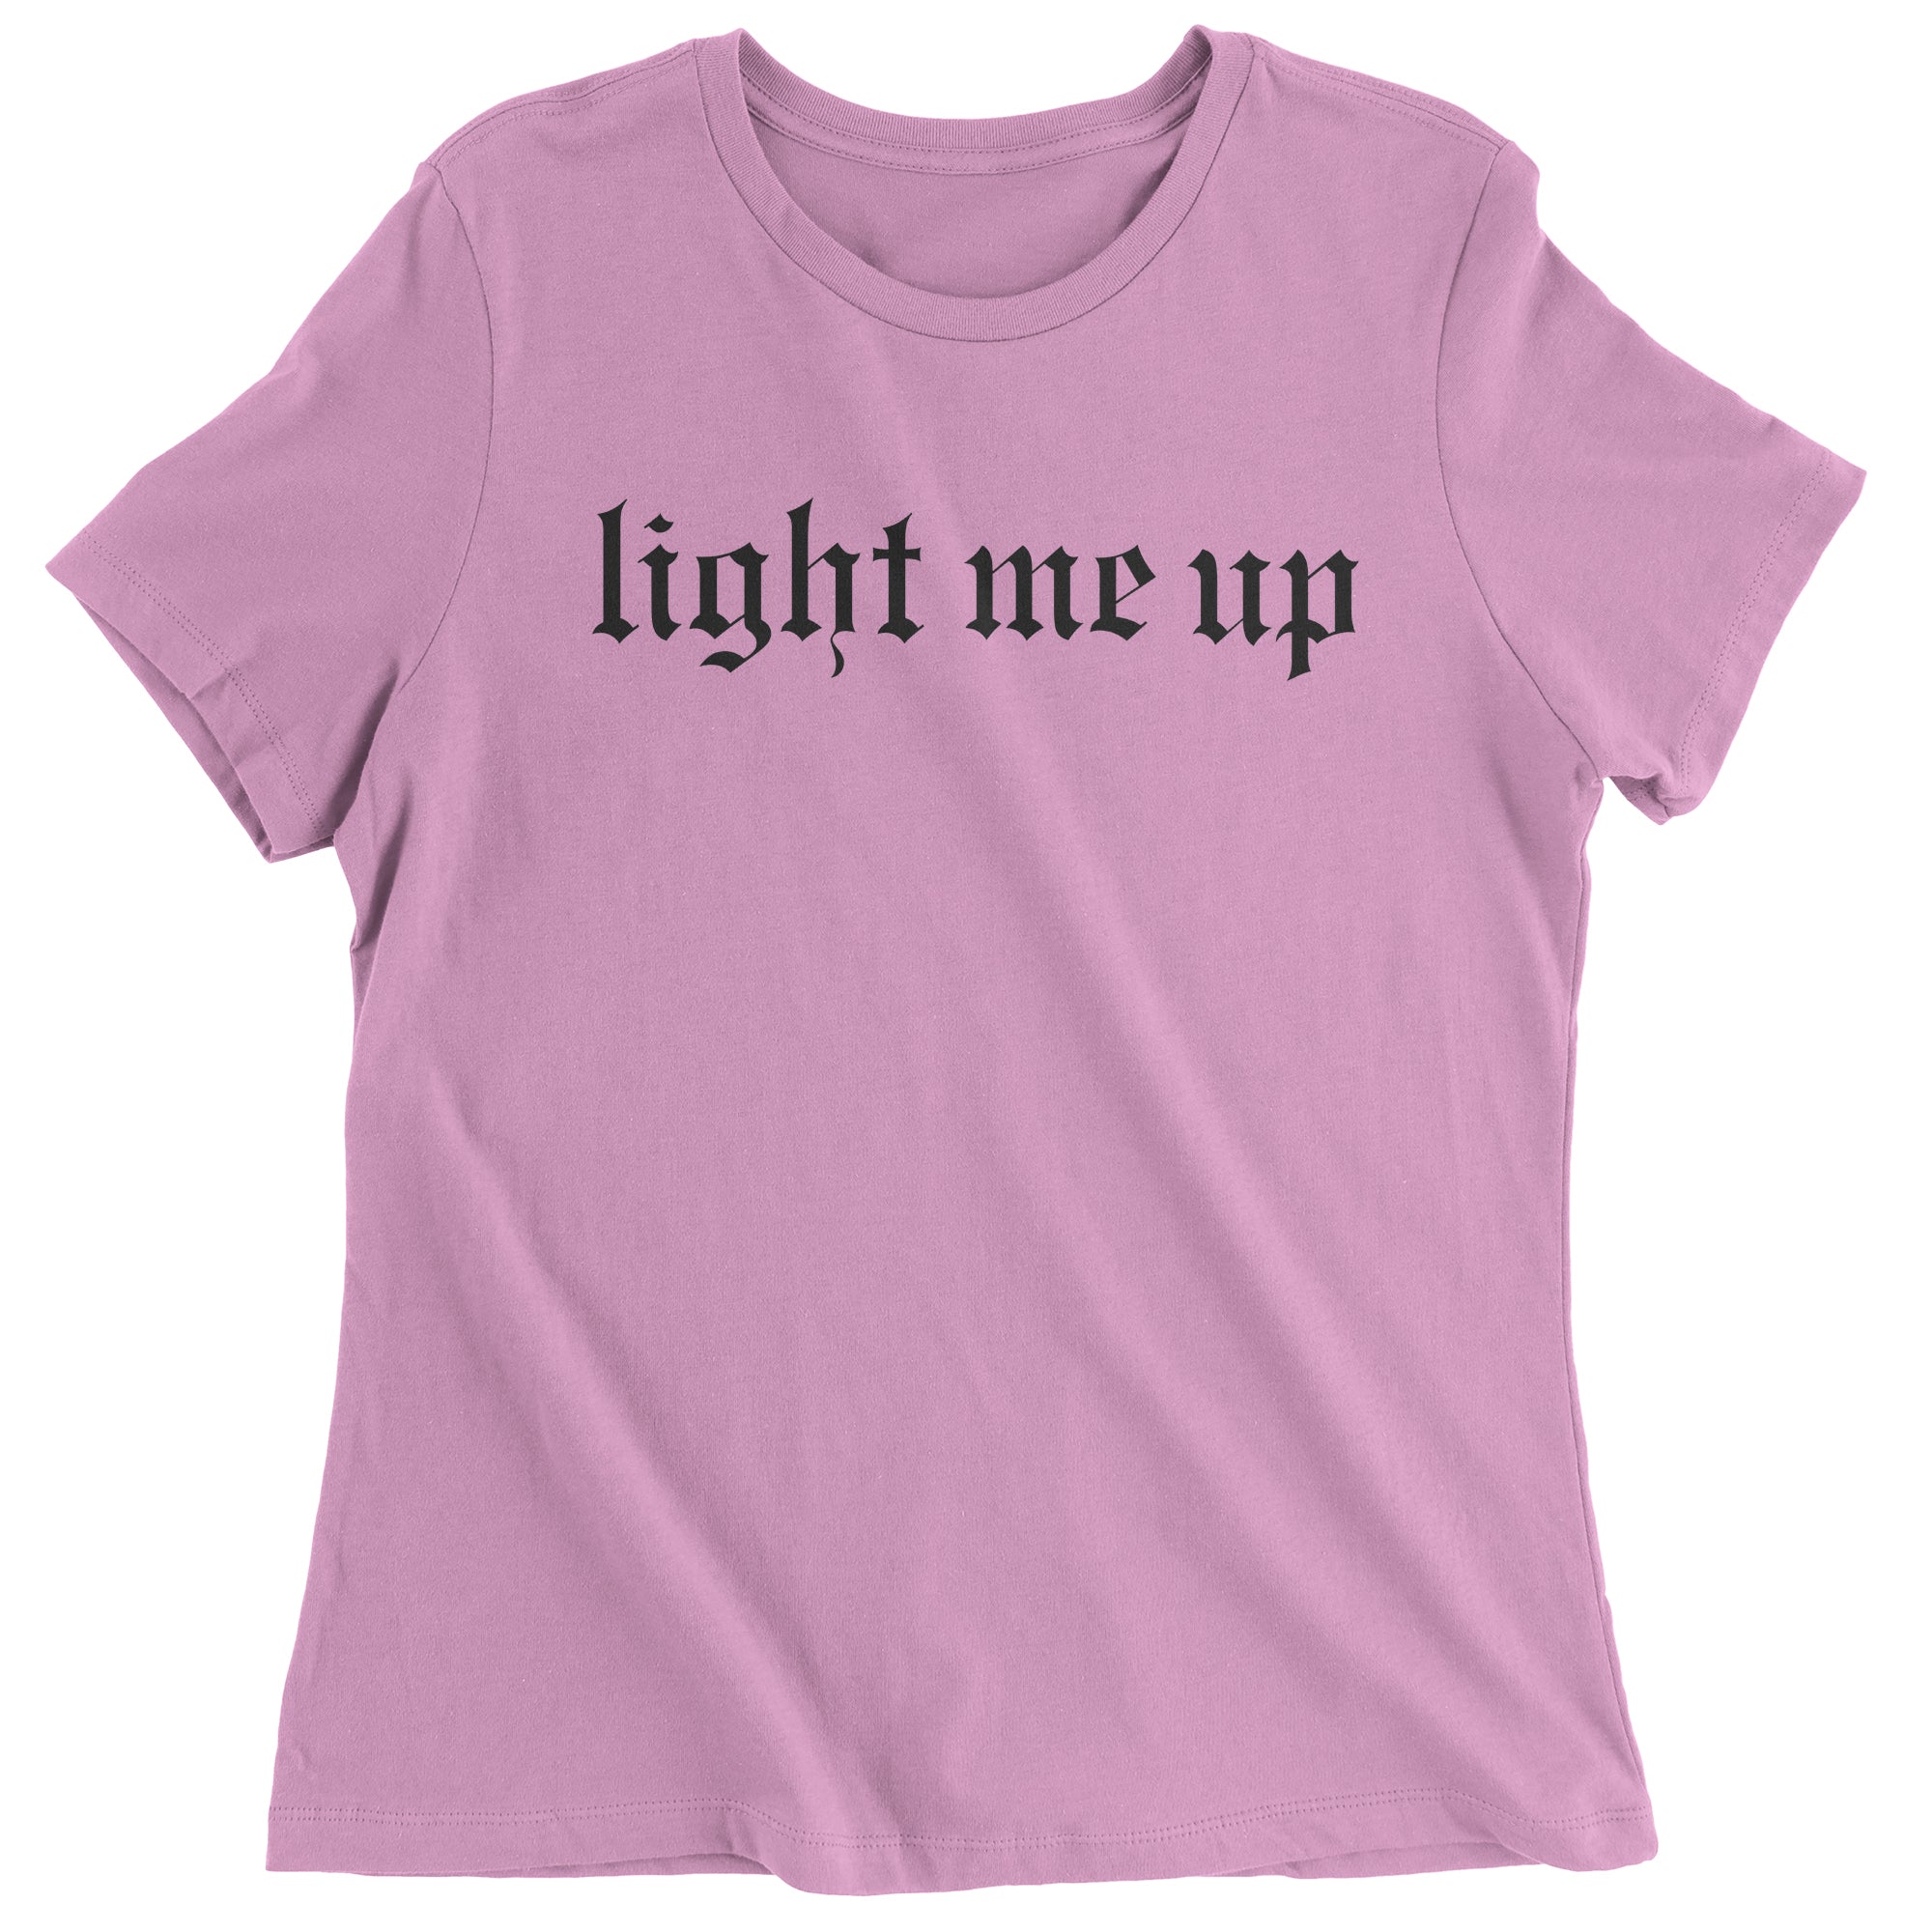 Light Me Up Reputationary Women's T-Shirt